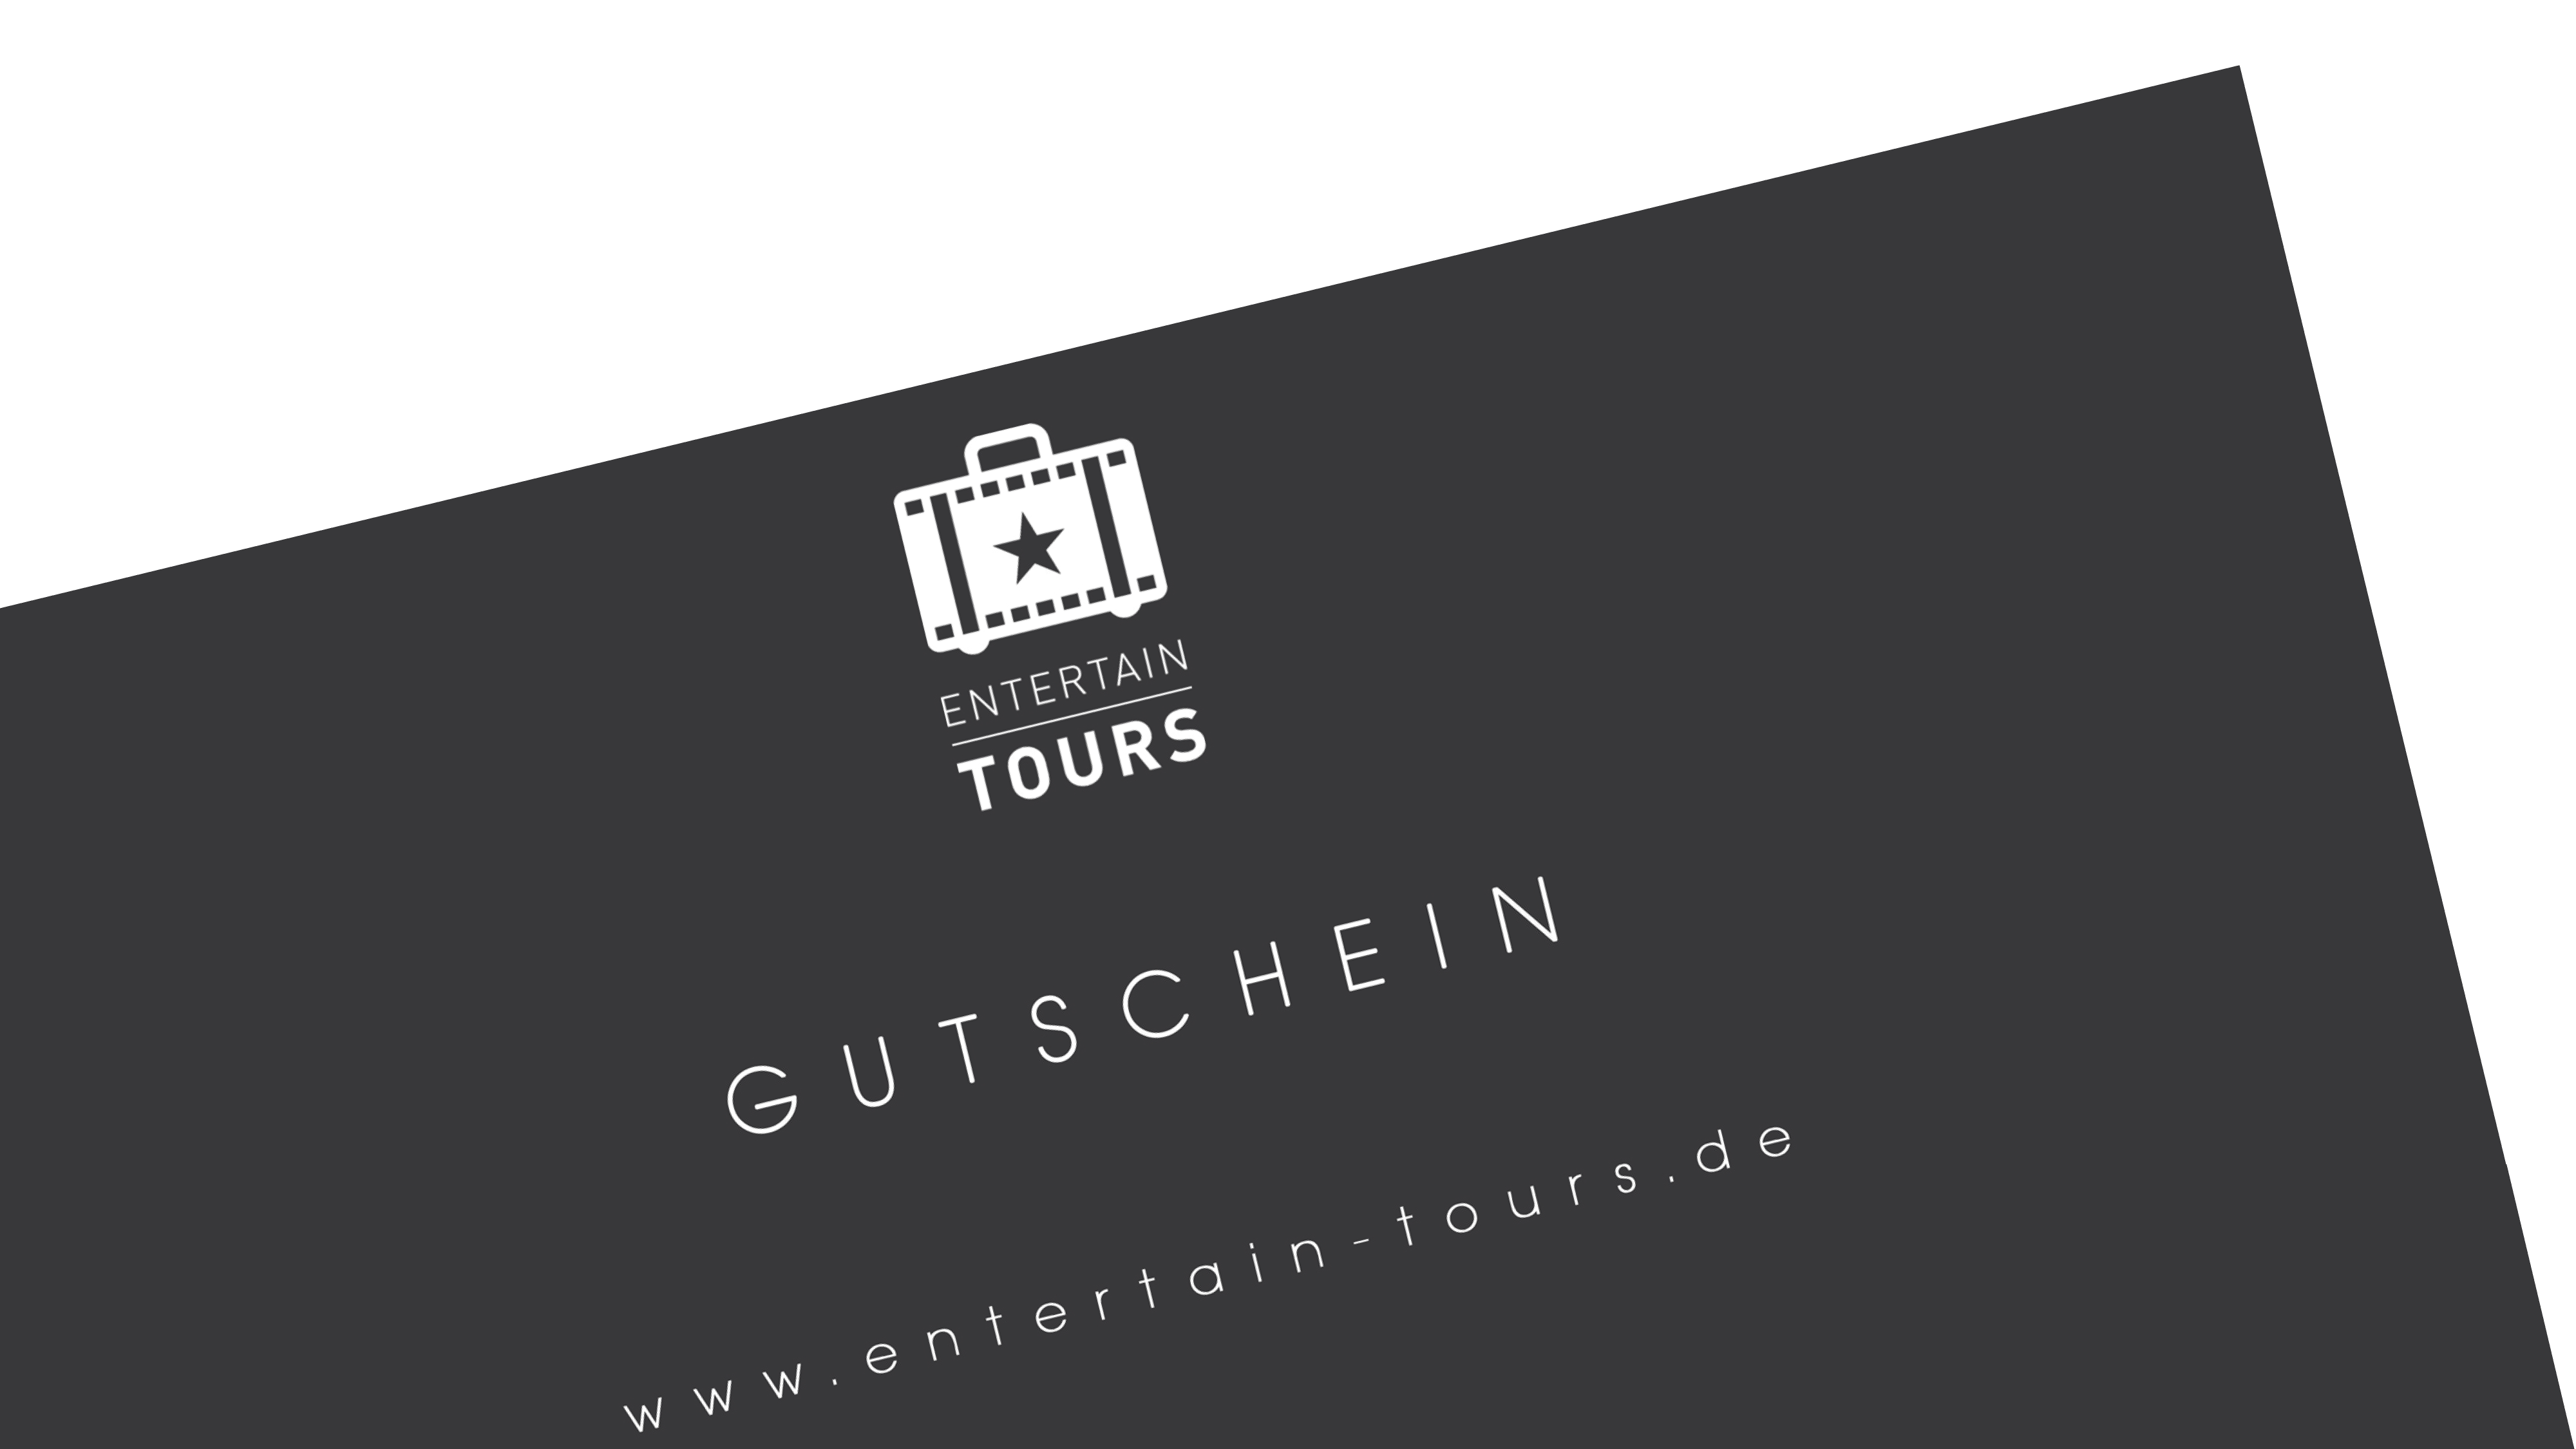 Gutschein Entertain Tours